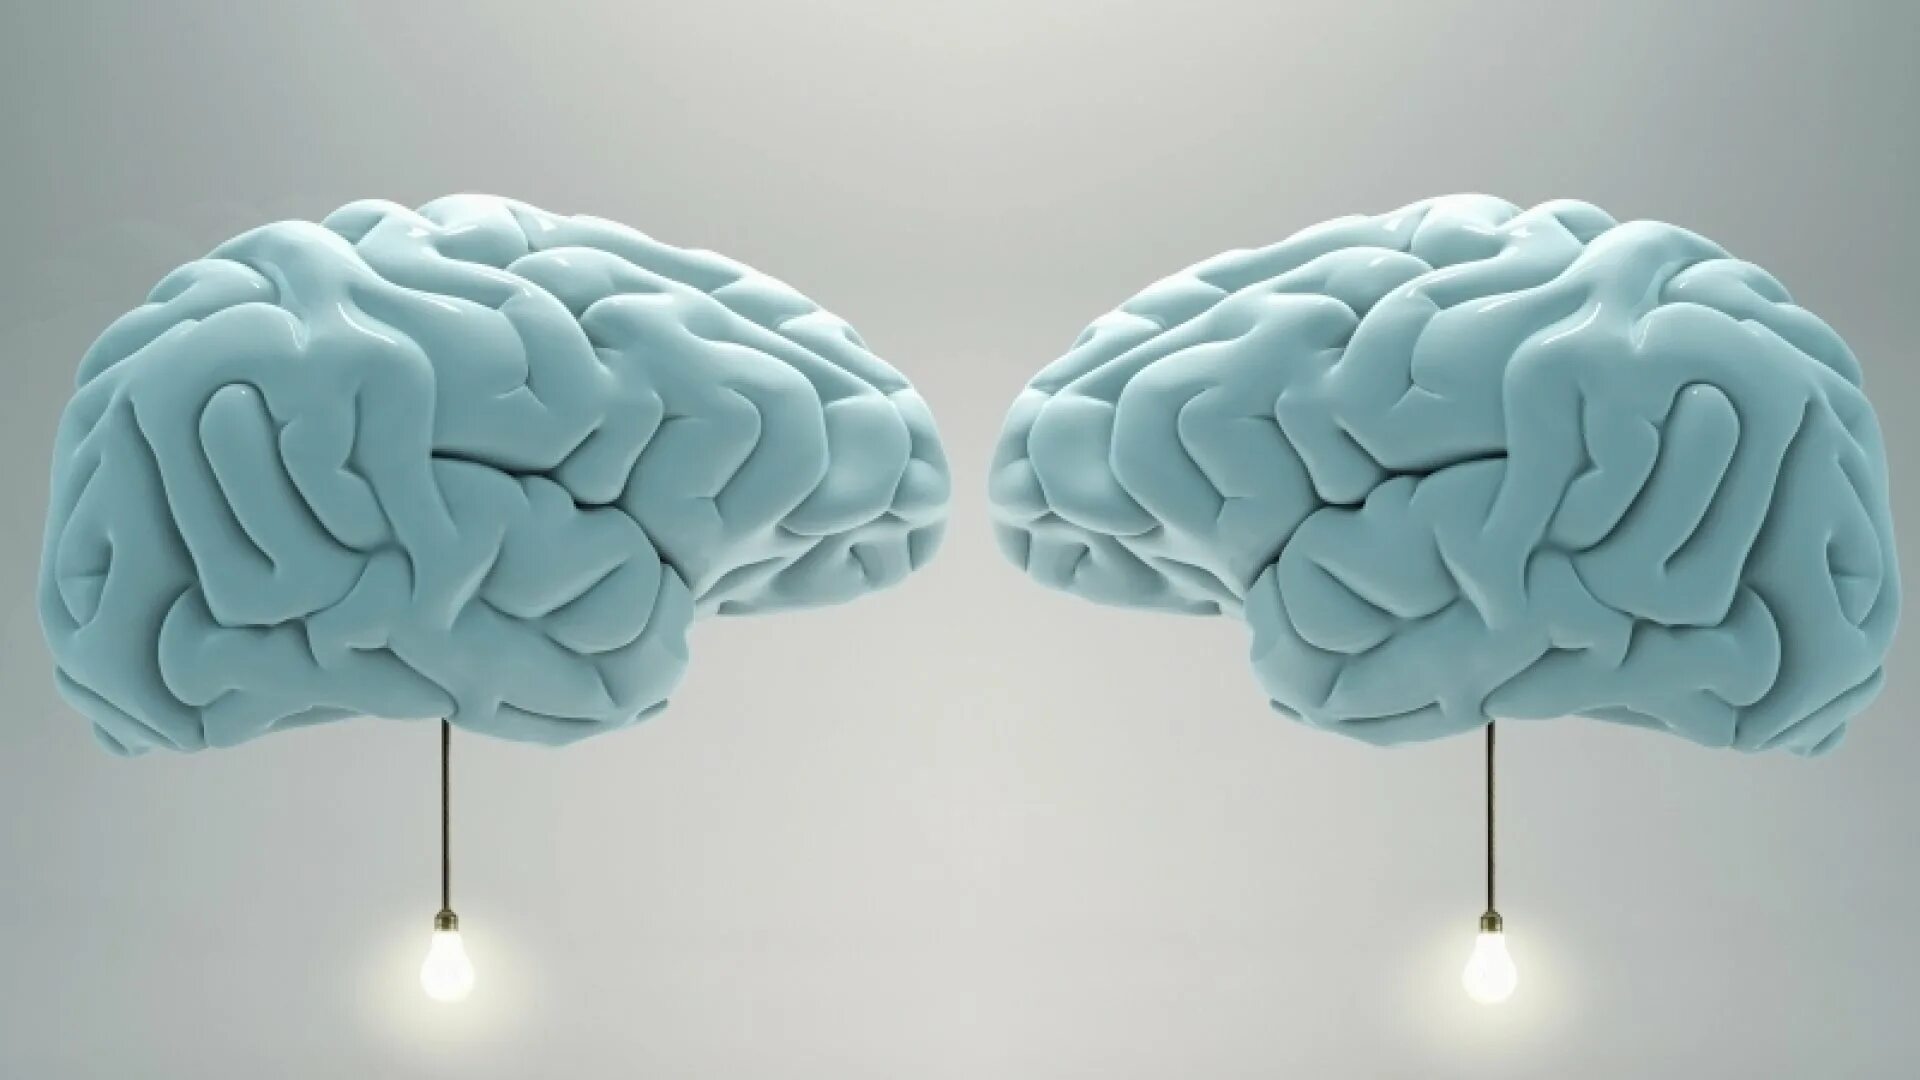 1 brain for 2. Один мозг на двоих. Один мозг на двоих пикча.